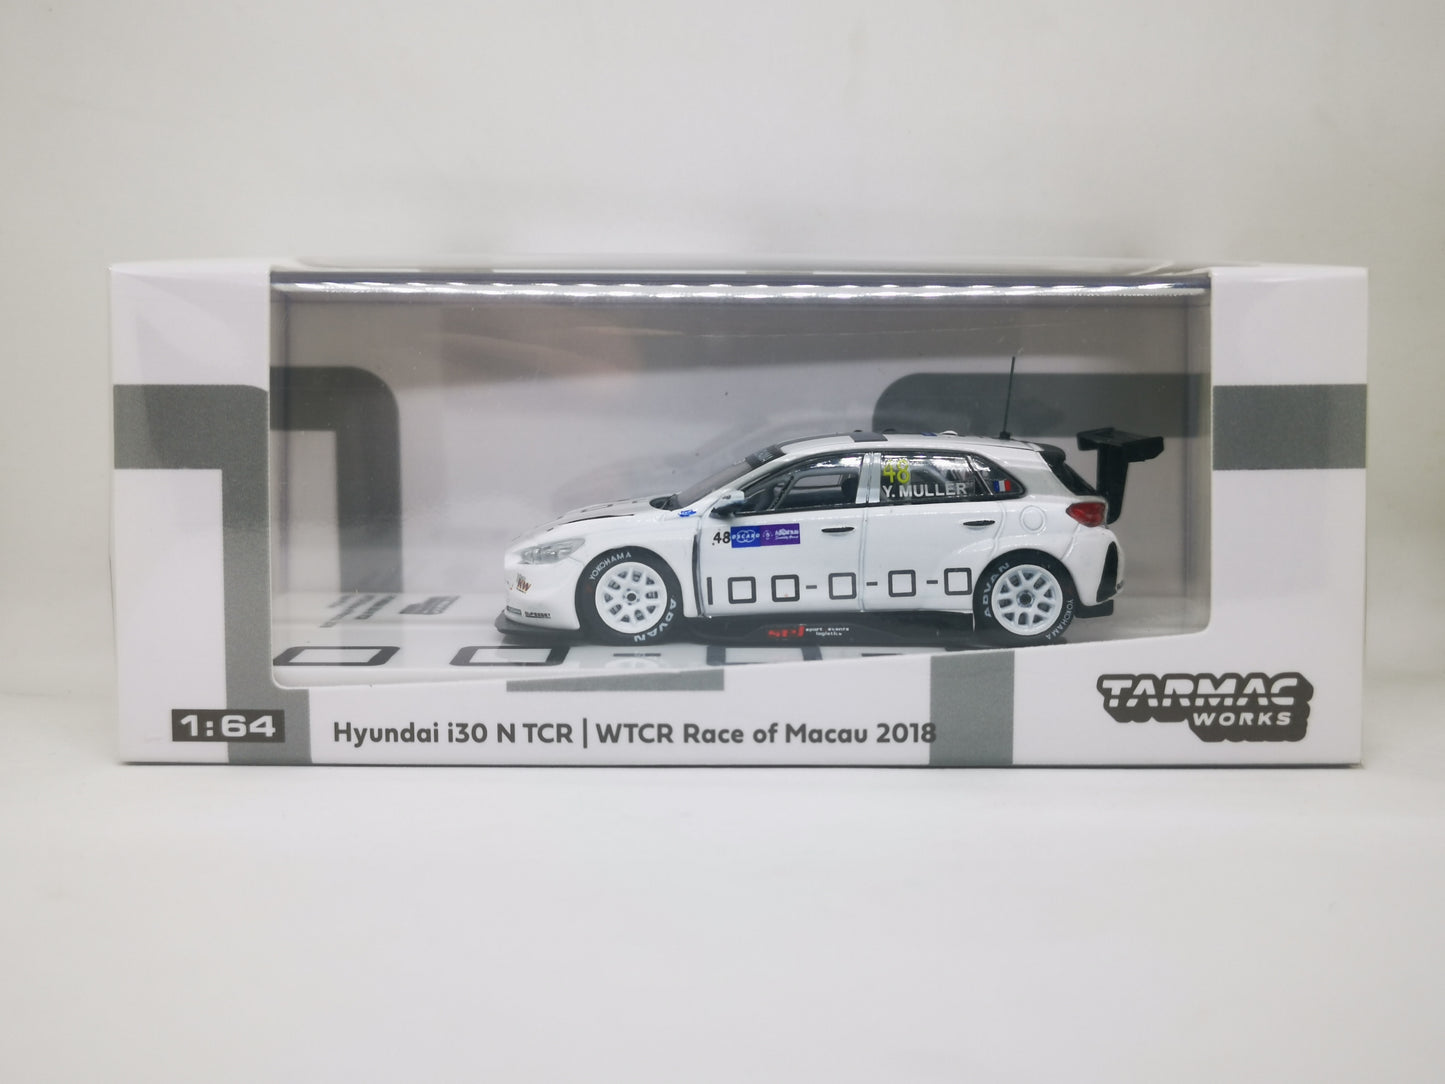 Tarmacworks Hyundai i30 N TCR WTCR Macau 2018 1:64 Scale